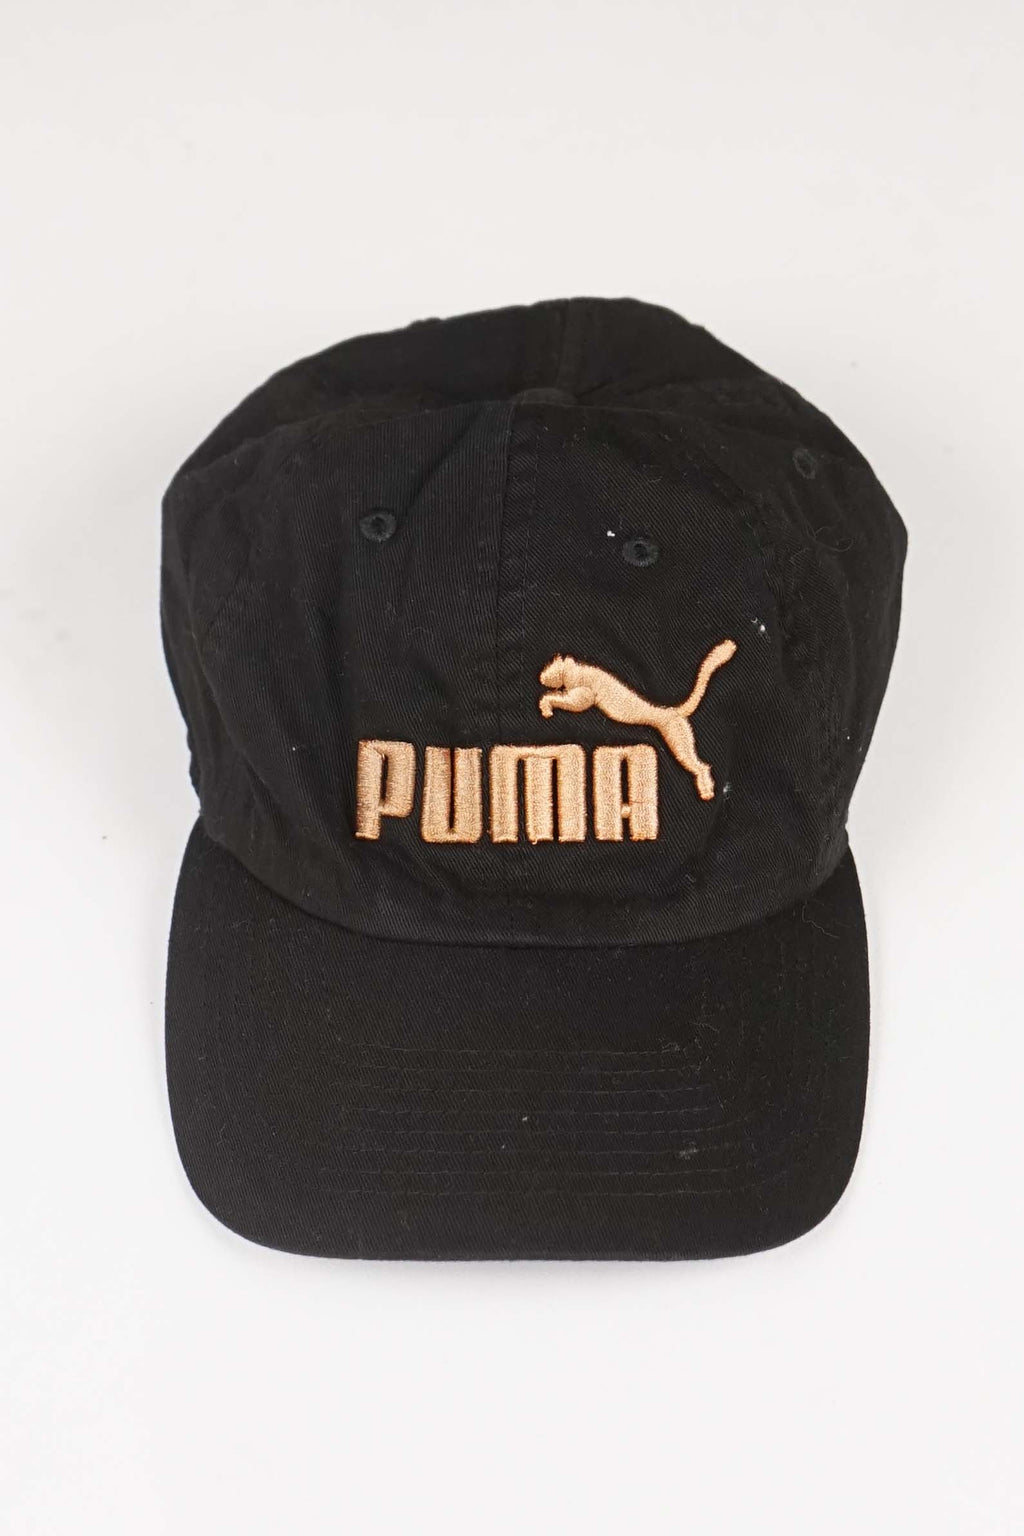 VINTAGE PUMA HAT